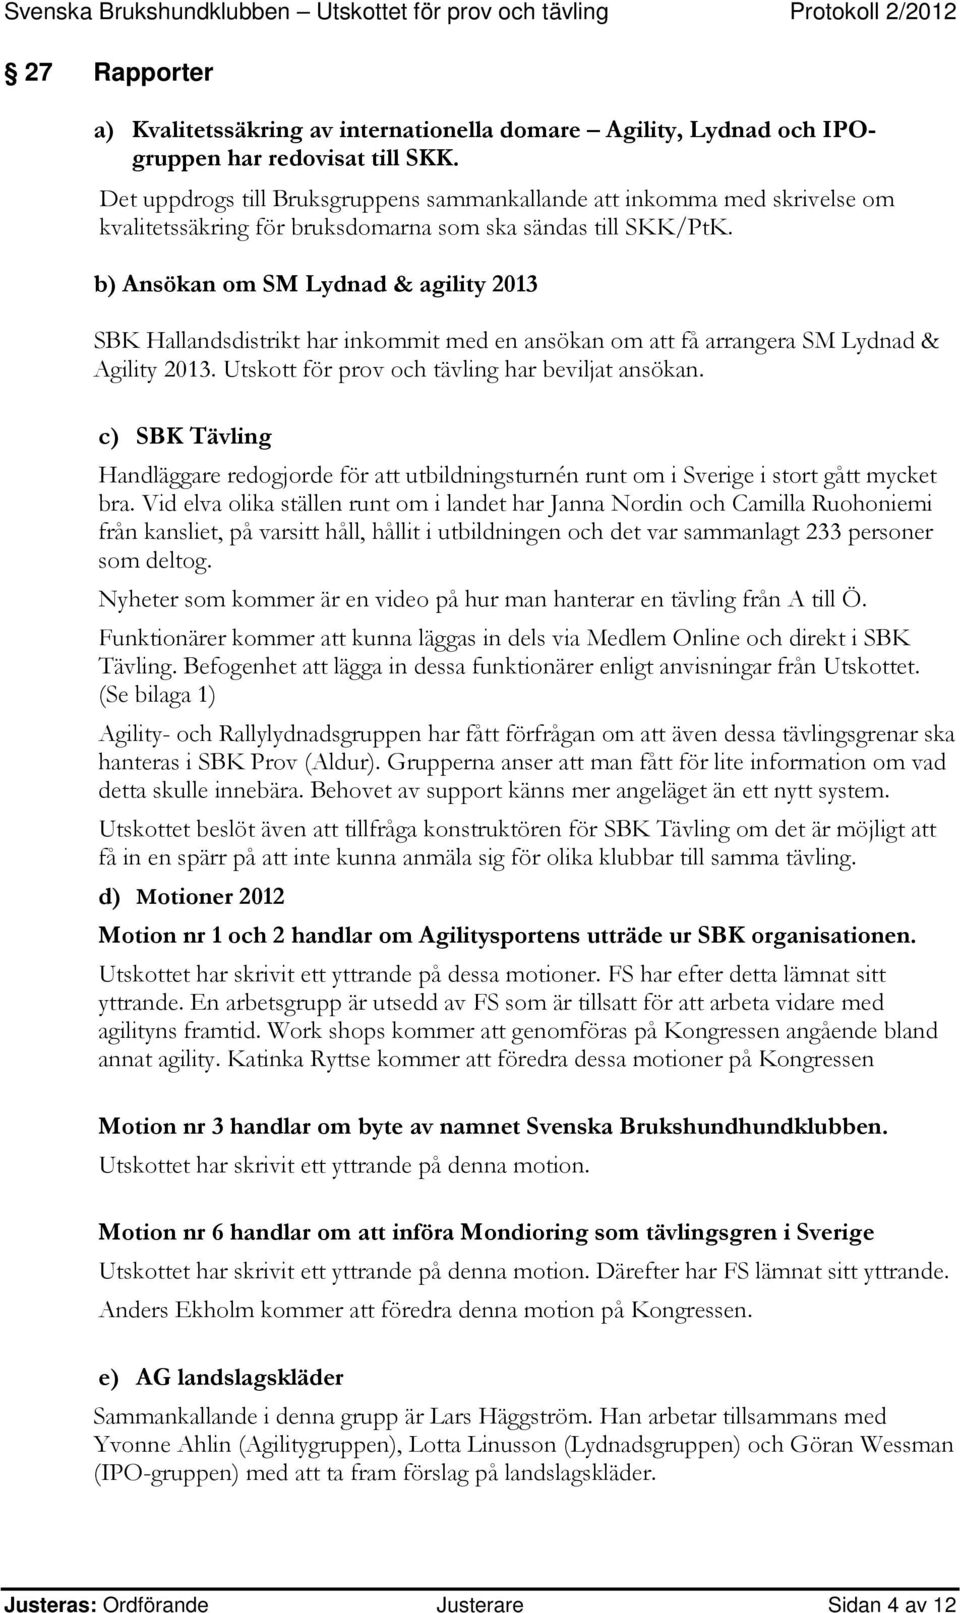 b) Ansökan om SM Lydnad & agility 2013 SBK Hallandsdistrikt har inkommit med en ansökan om att få arrangera SM Lydnad & Agility 2013. Utskott för prov och tävling har beviljat ansökan.